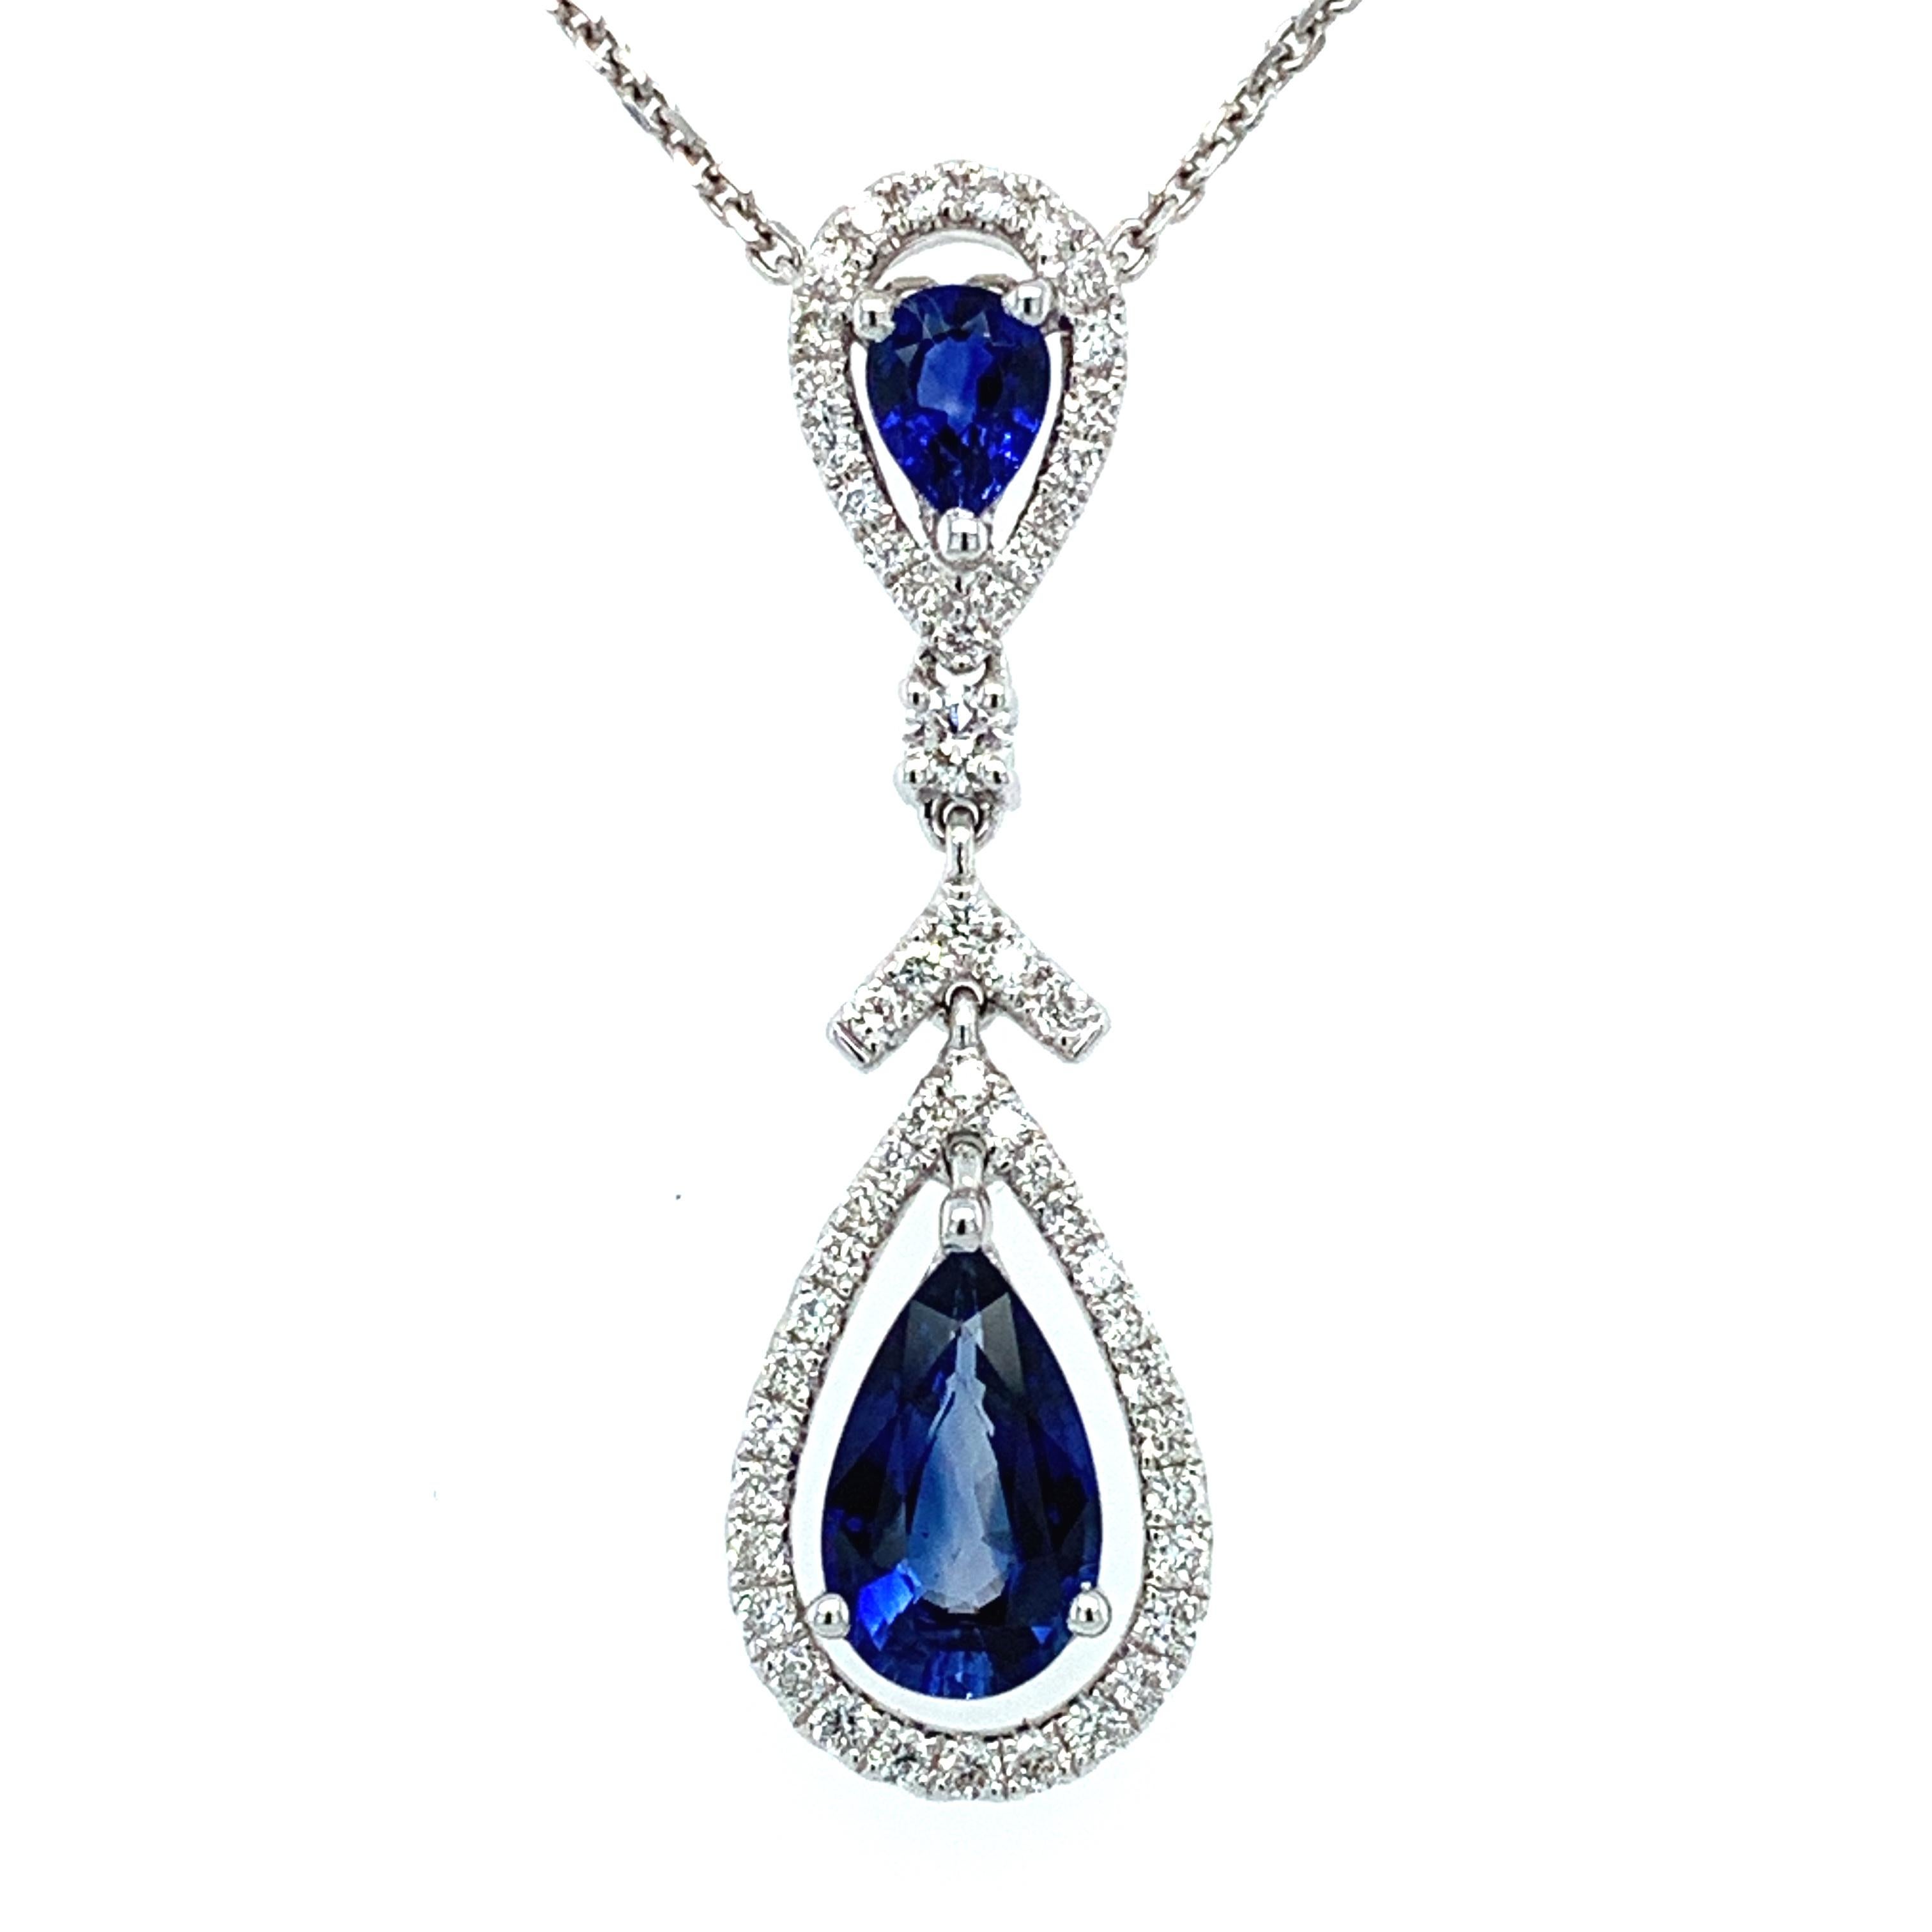 Werten Sie Ihre Schmucksammlung mit dieser atemberaubenden Halskette aus Saphiren und Diamanten auf. Dieses Collier aus 18-karätigem Weißgold zeigt einen wunderschönen blauen, birnenförmigen Saphir aus Ceylon, der von einem Halo aus funkelnden